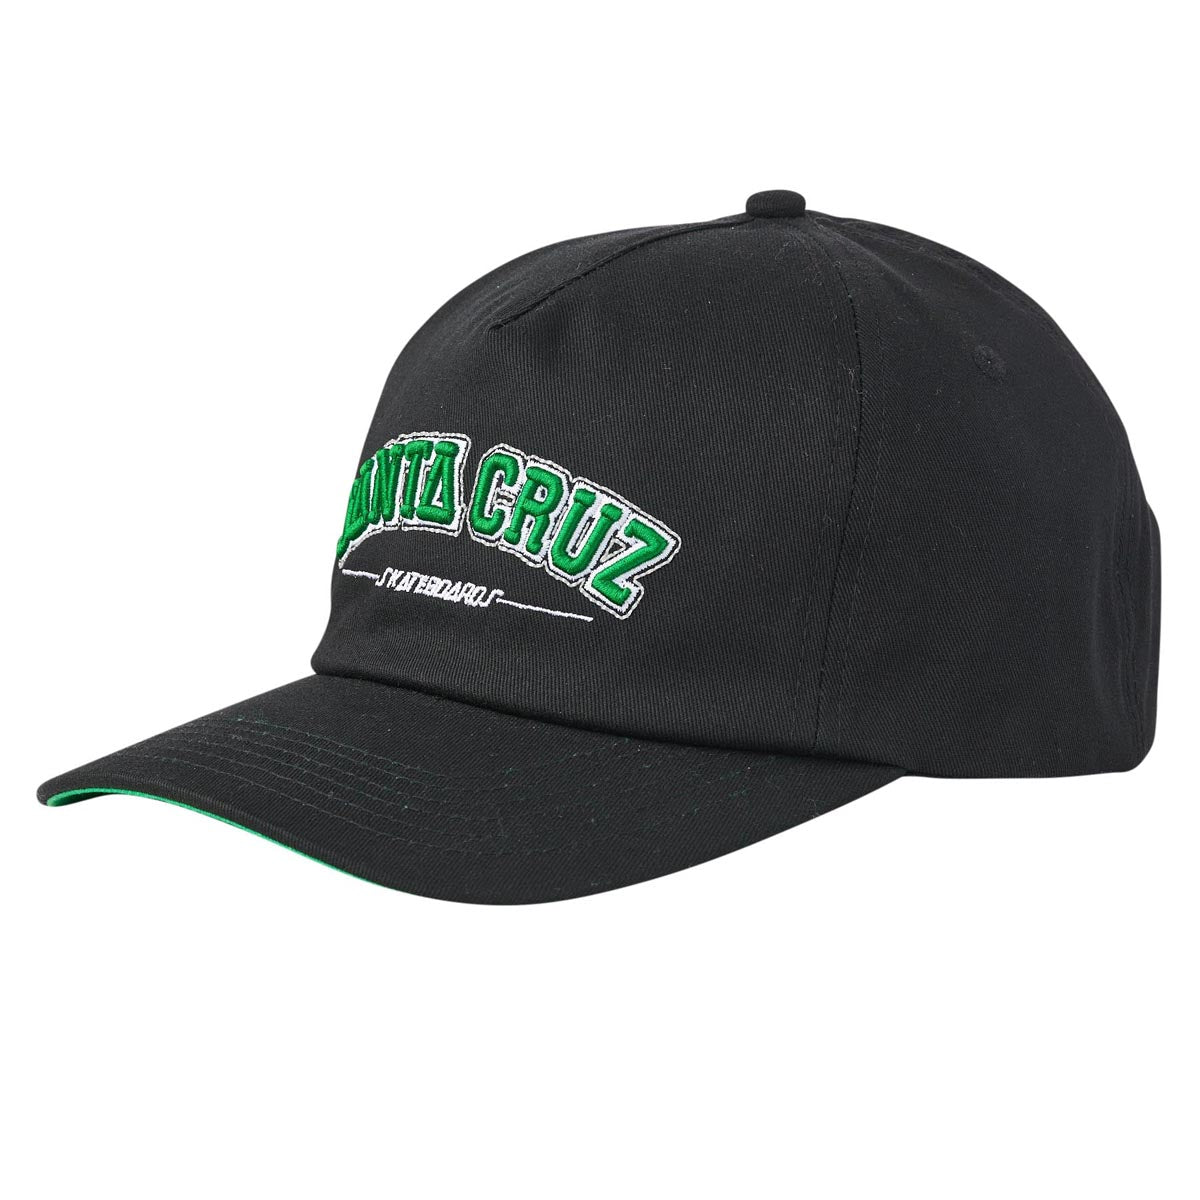 Santa Cruz Collegiate Strapback Hat - Eco Black image 1